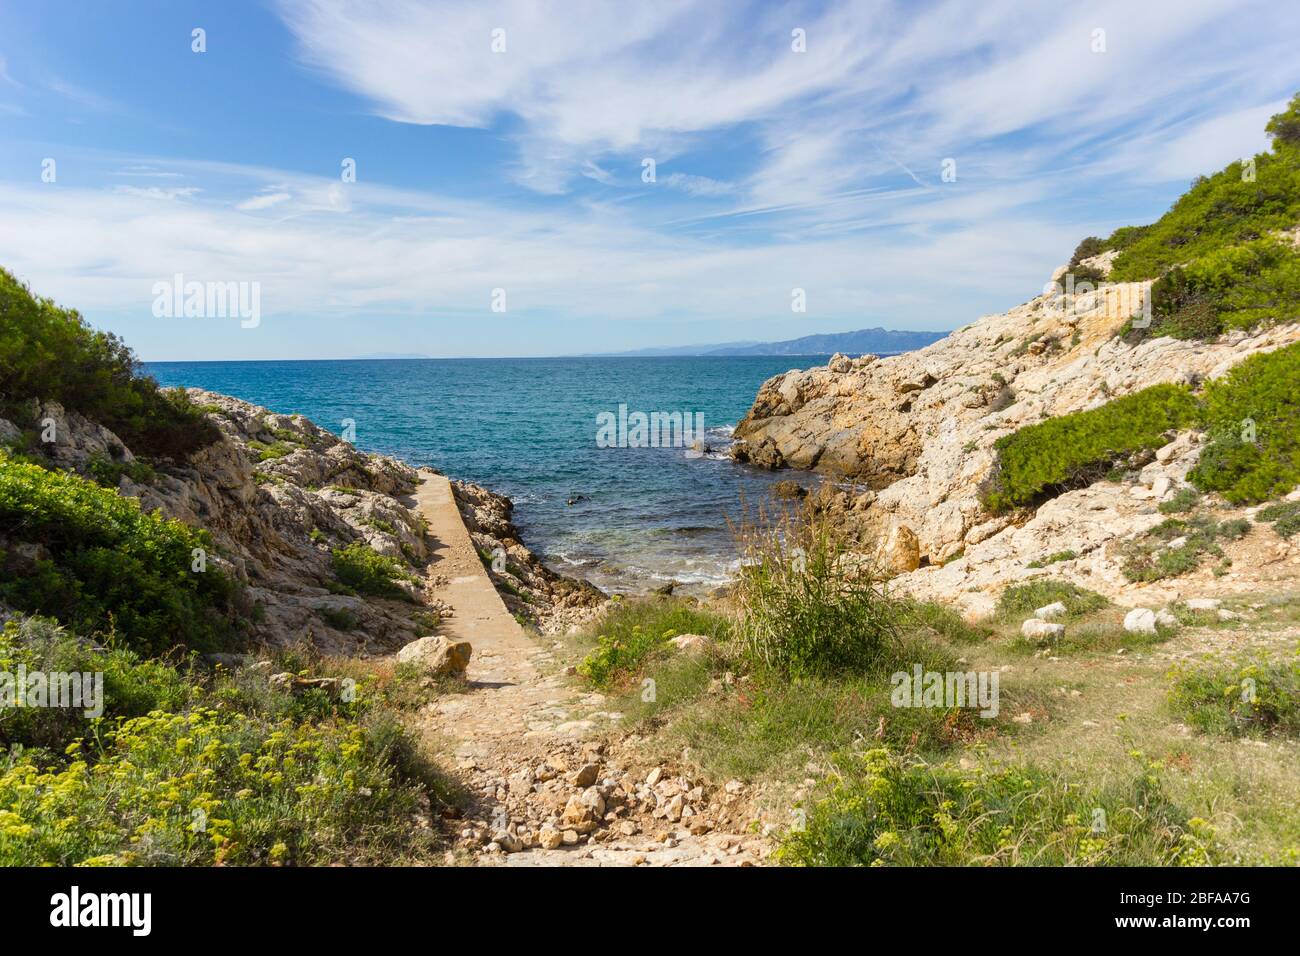 Schöne Landschaft (Seenlandschaft). Versteckte Bucht in der Nähe von Salou Leuchtturm, Provinz Tarragona, Katalonien, Spanien. Friedlicher, unglaublicher Ort Stockfoto